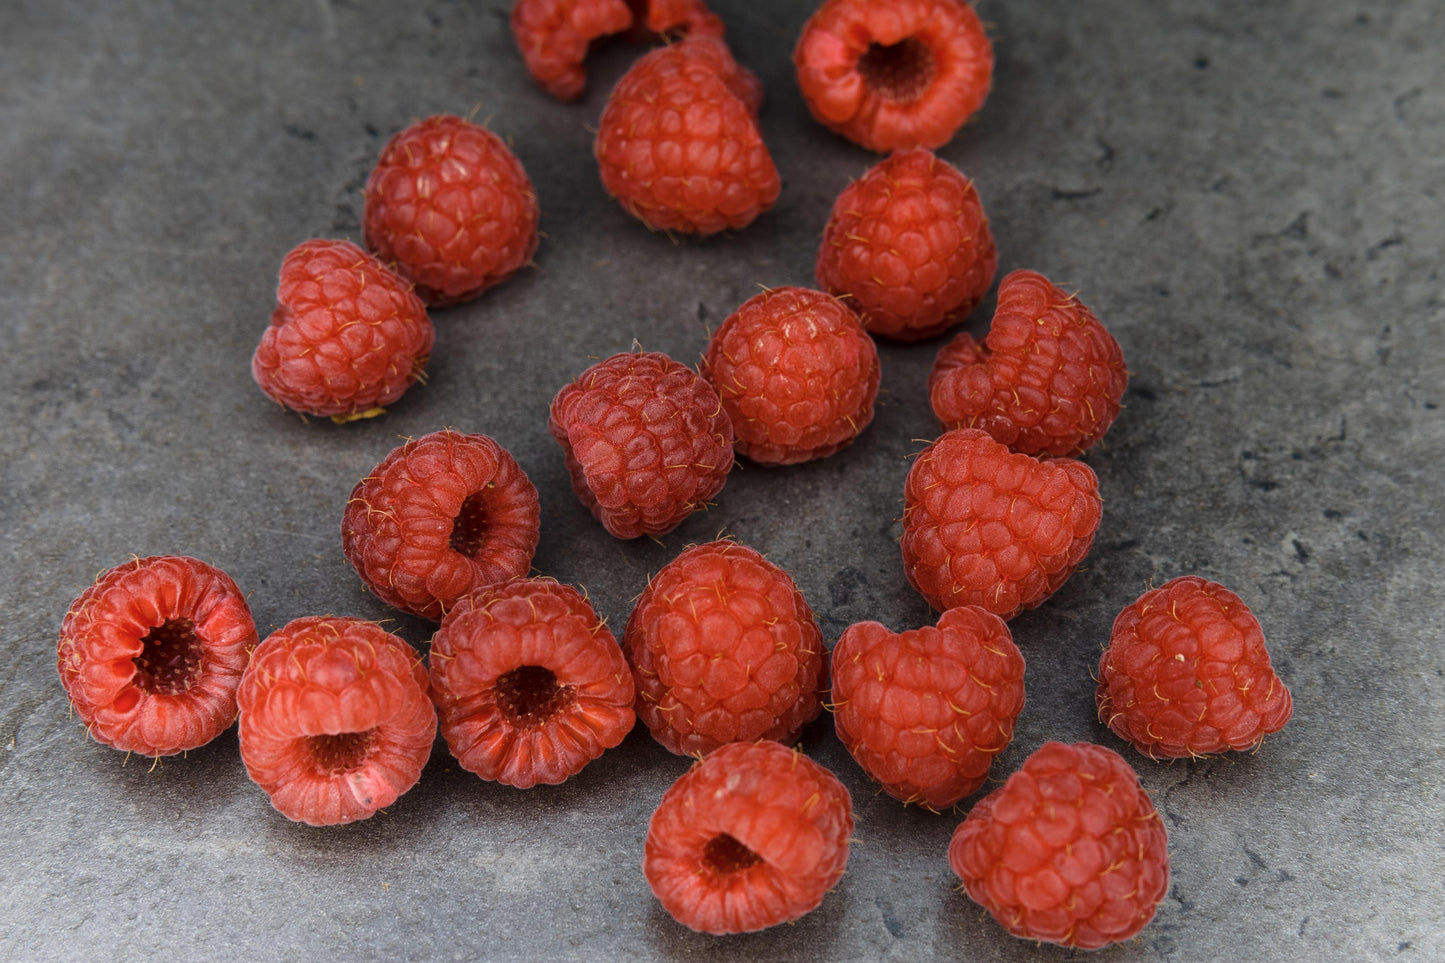 Raspberries Punnet 125g - Wildsprout